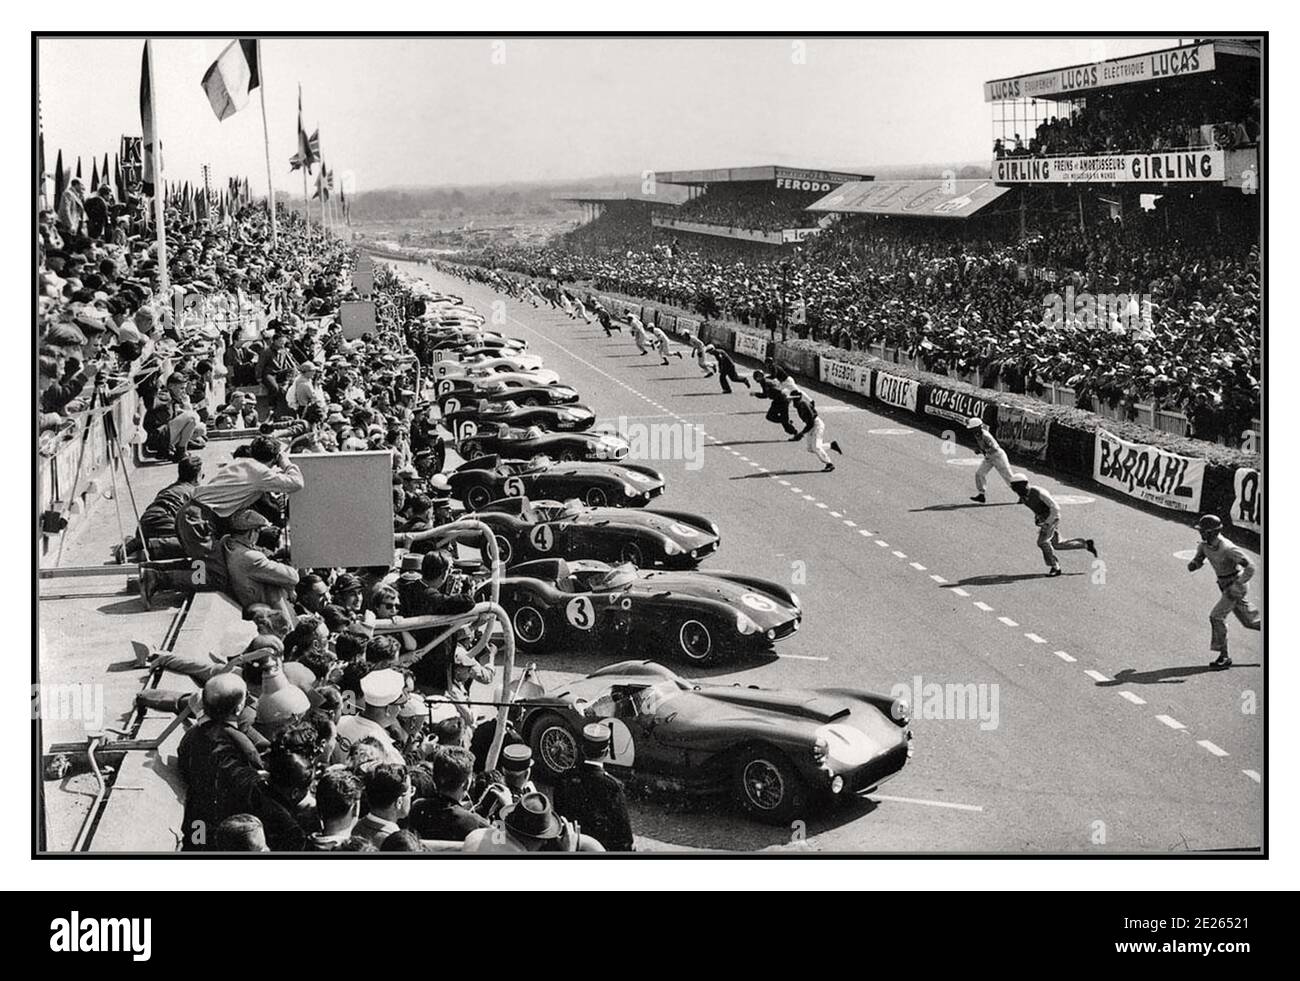 1955 le Mans 24 HR vintage archive course départ de course traditionnel avec des pilotes de sprint à leurs voitures à 1955 le Mans 24 heures de départ de course. Cette course a vu un accident tragique et catastrophique qui a tué quatre-vingt-trois spectateurs lorsqu'un moteur de voiture Mercedes et des pièces ont tranché dans la foule du stand principal. Mercedes a pris sa retraite de la course automobile pendant une décennie. Le grand gagnant : Jaguar D Type No 6 piloté par M. Hawthorn et I. Bueb. Distance parcourue 4 135,380 km à une moyenne de 172,308 km/h écart entre 1st et 2nd lieu : 73,362 km Banque D'Images